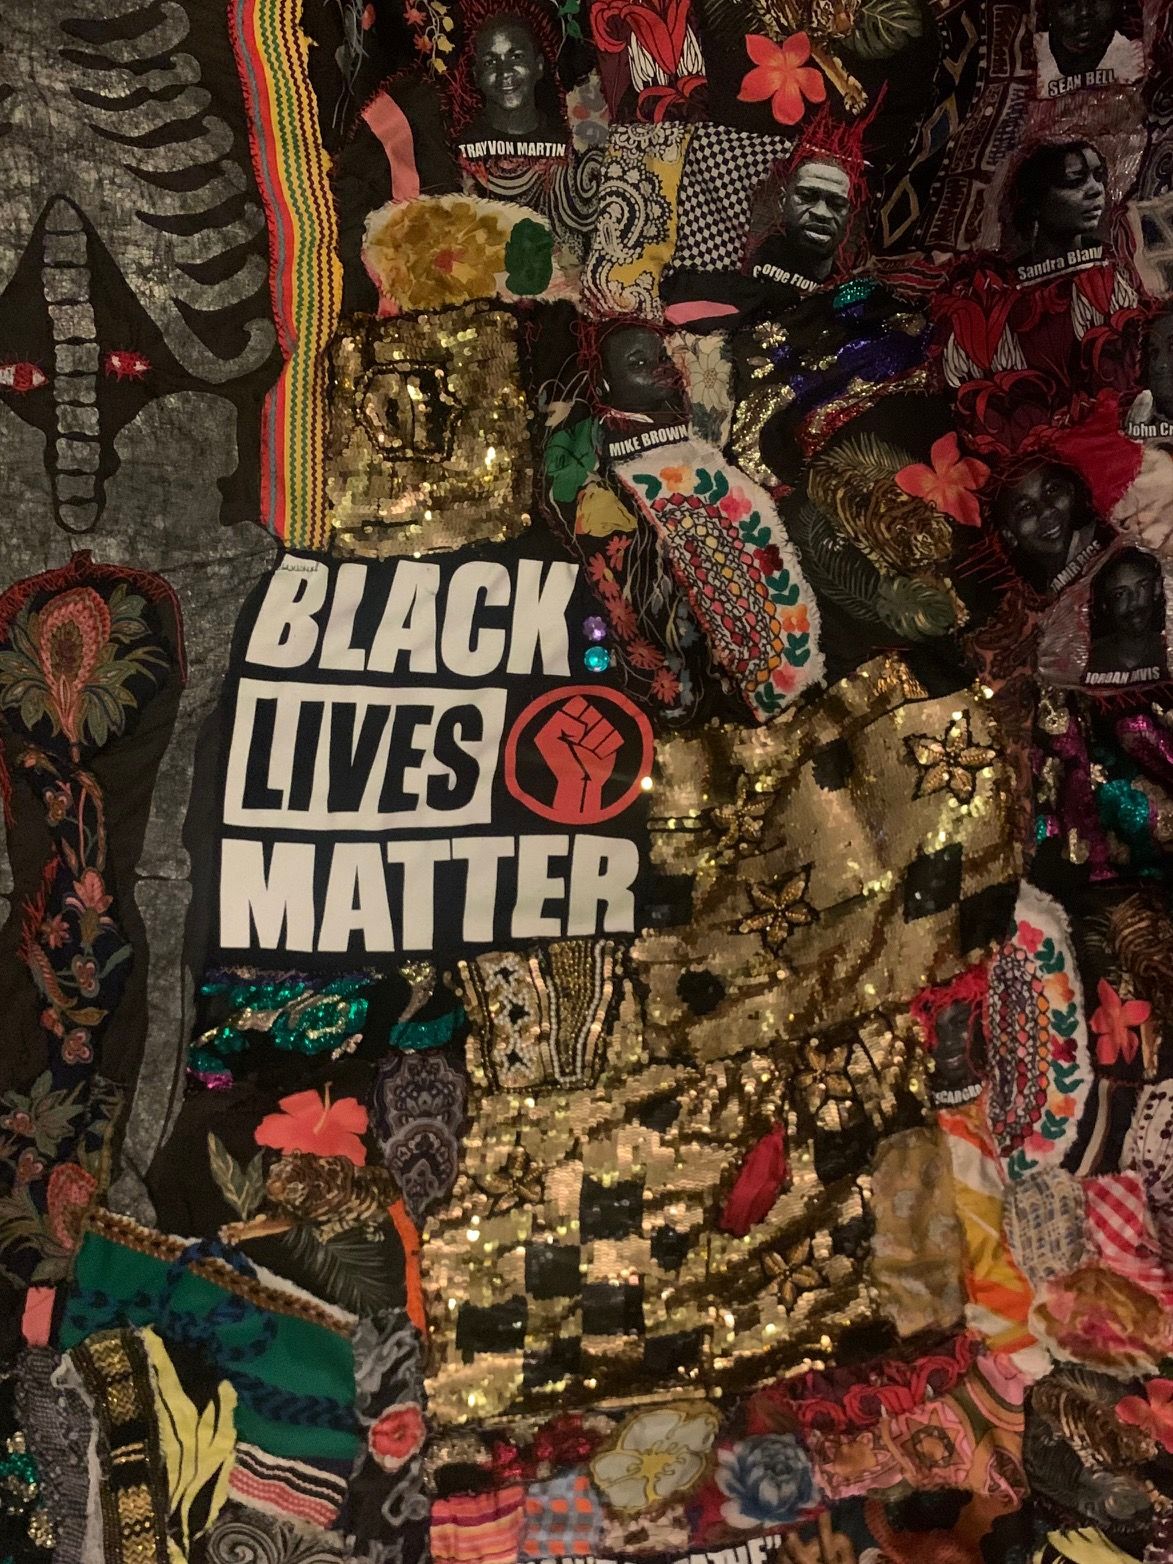 Terri Gillis, "Black Lives Matter"